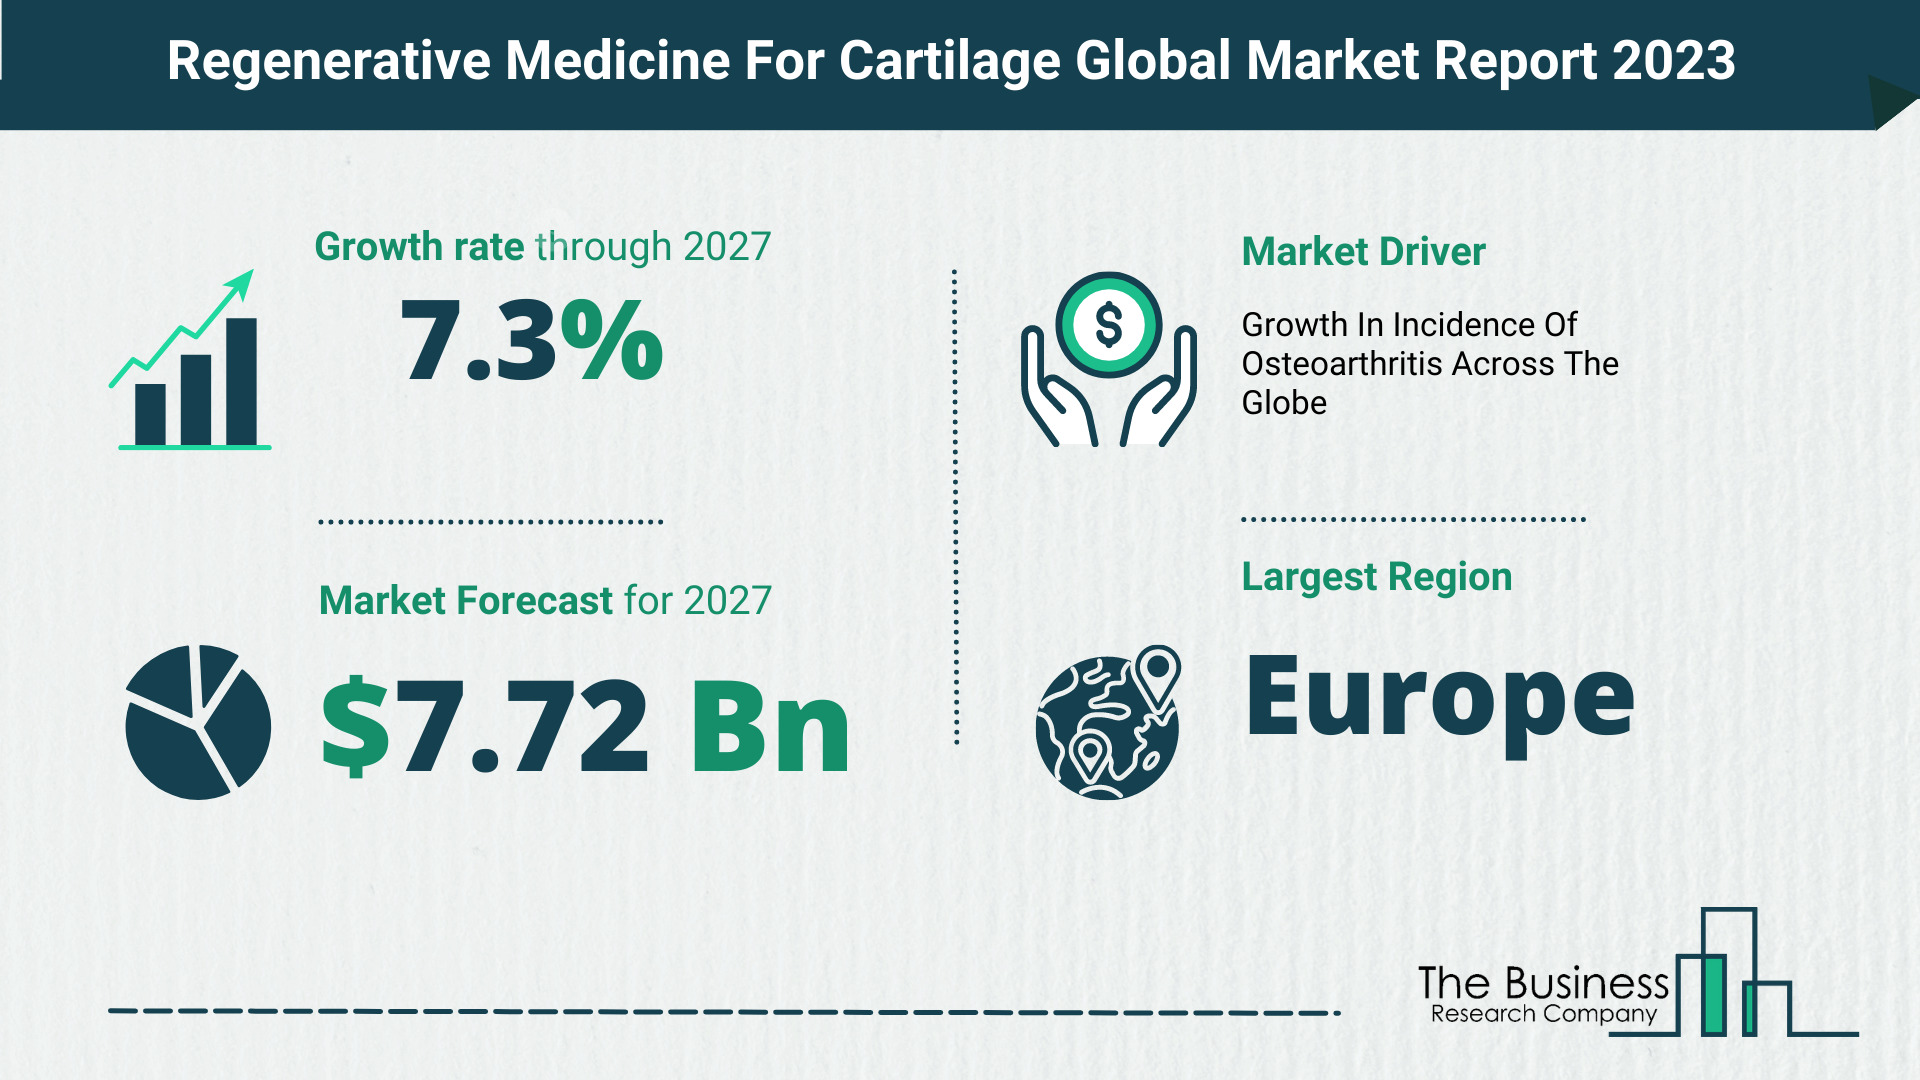 Regenerative Medicine For Cartilage Market Size